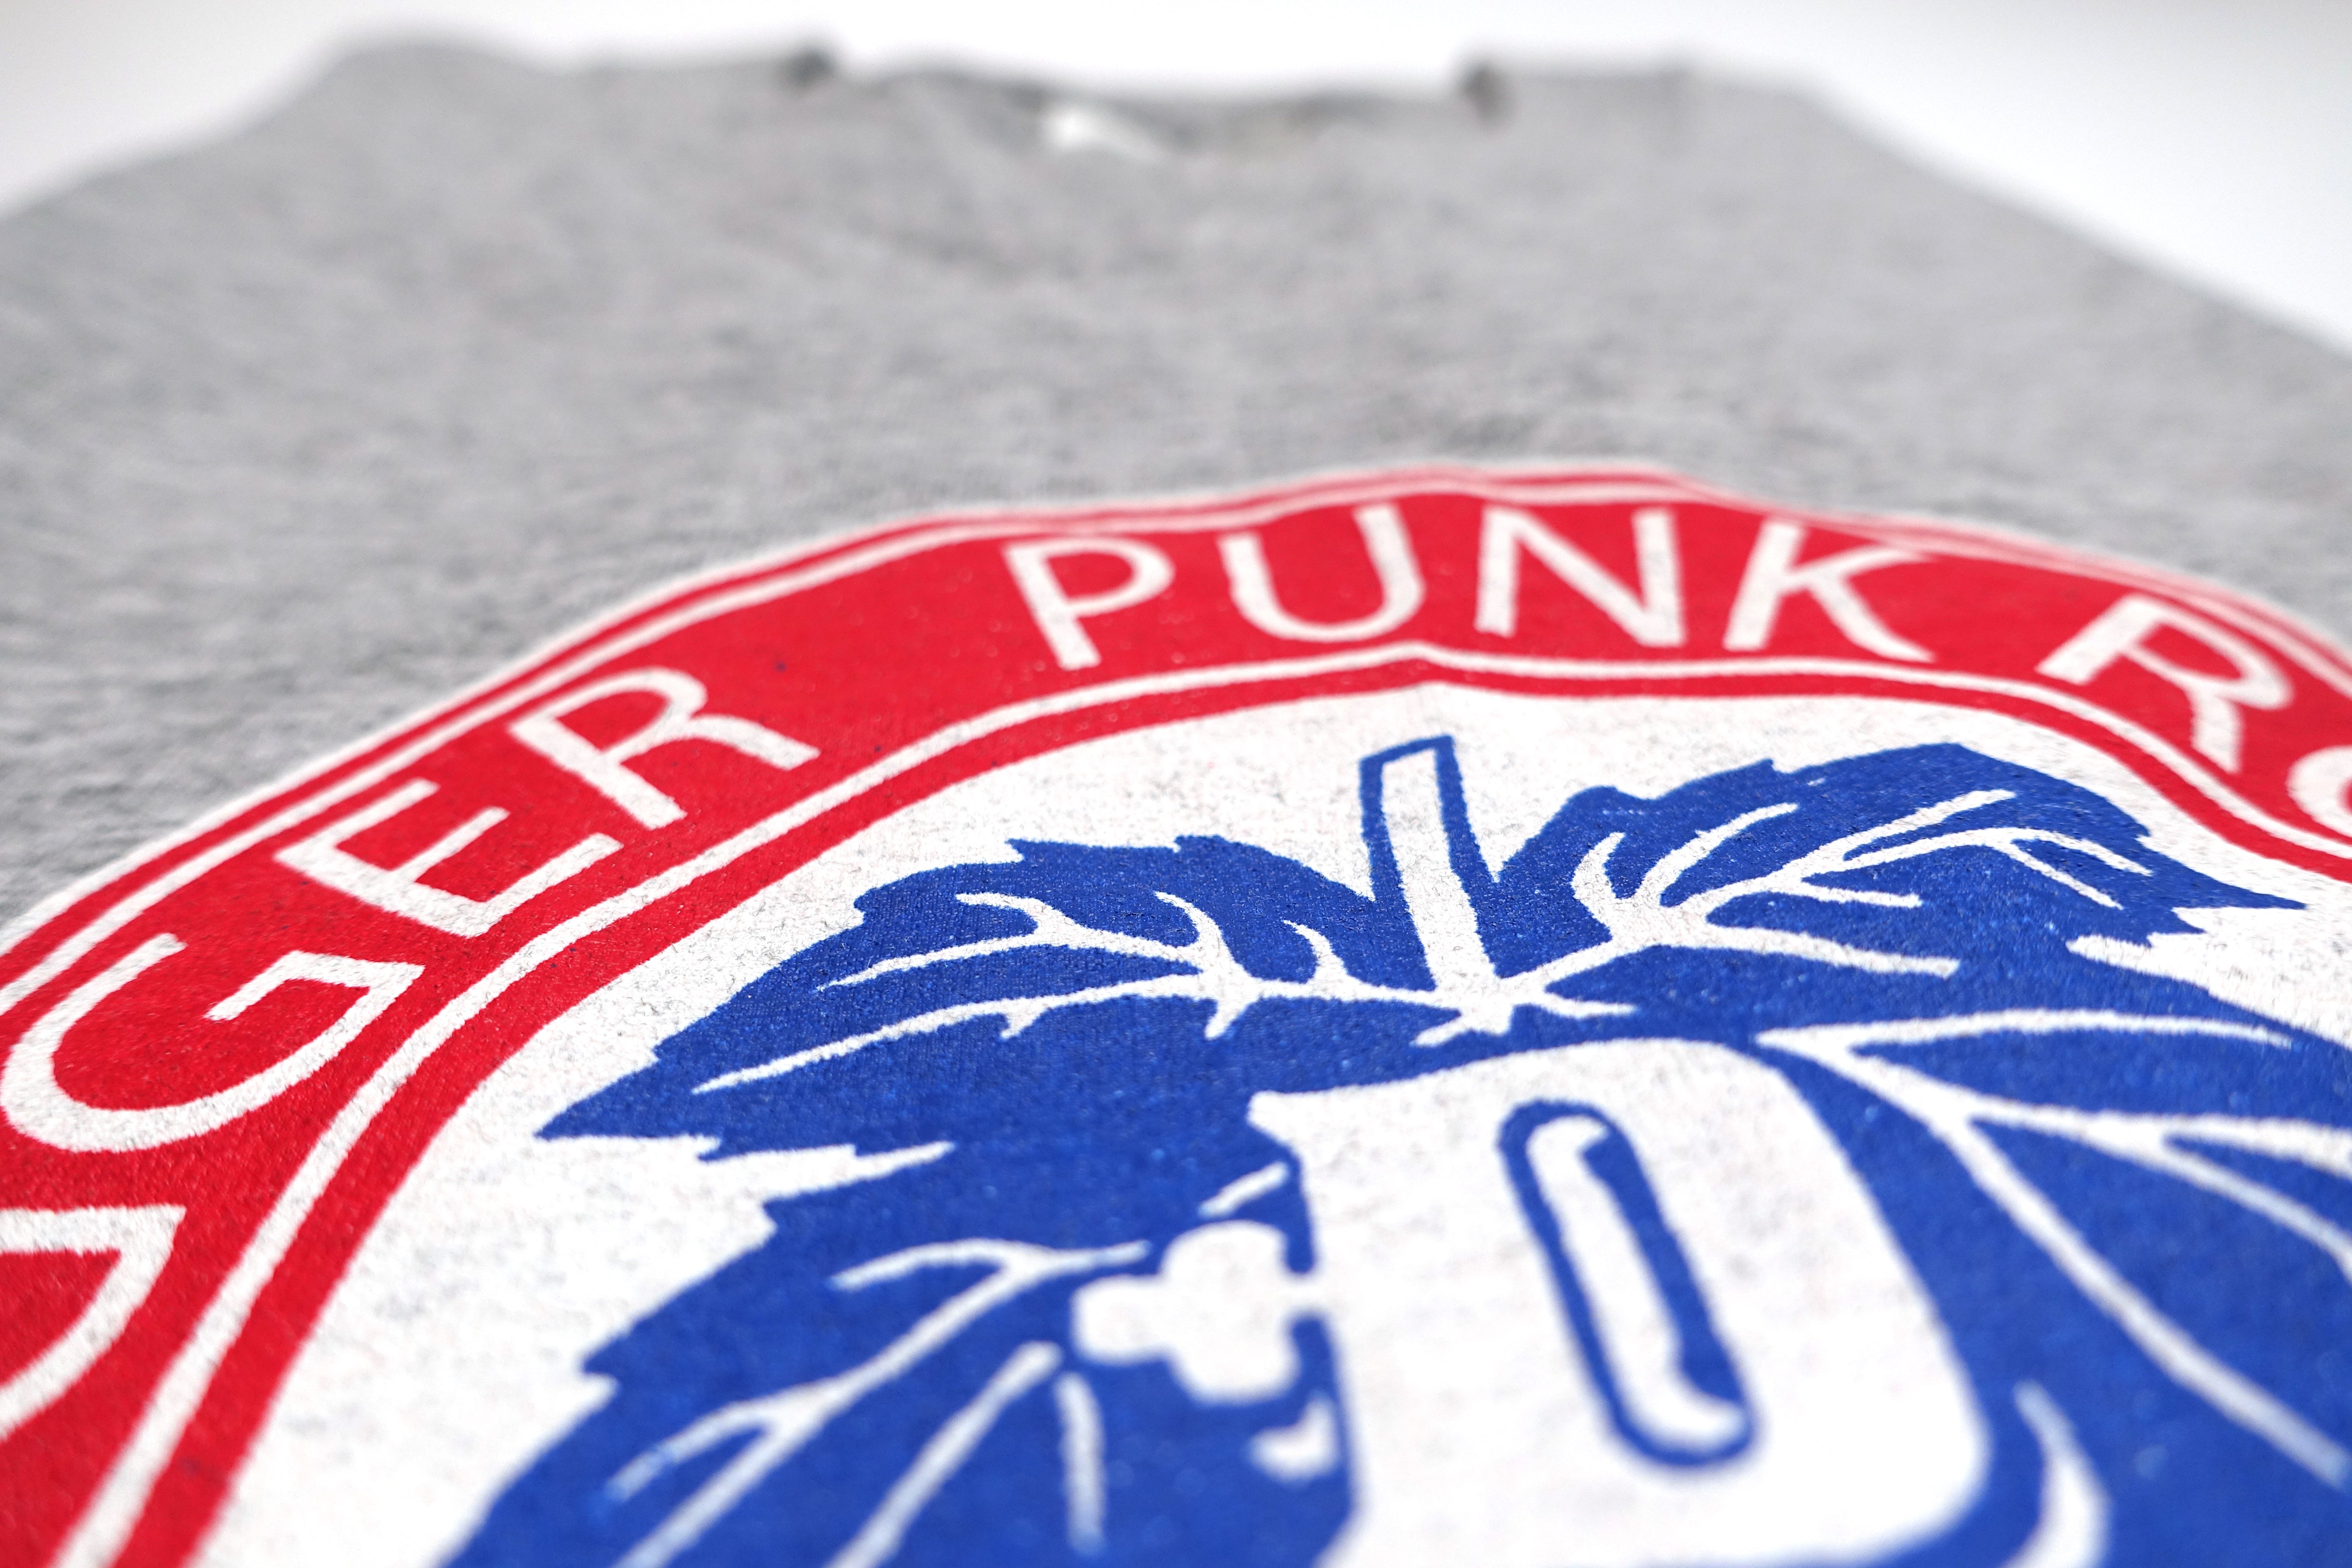 Digger - Digger Punk Rock Tour Shirt Size Medium